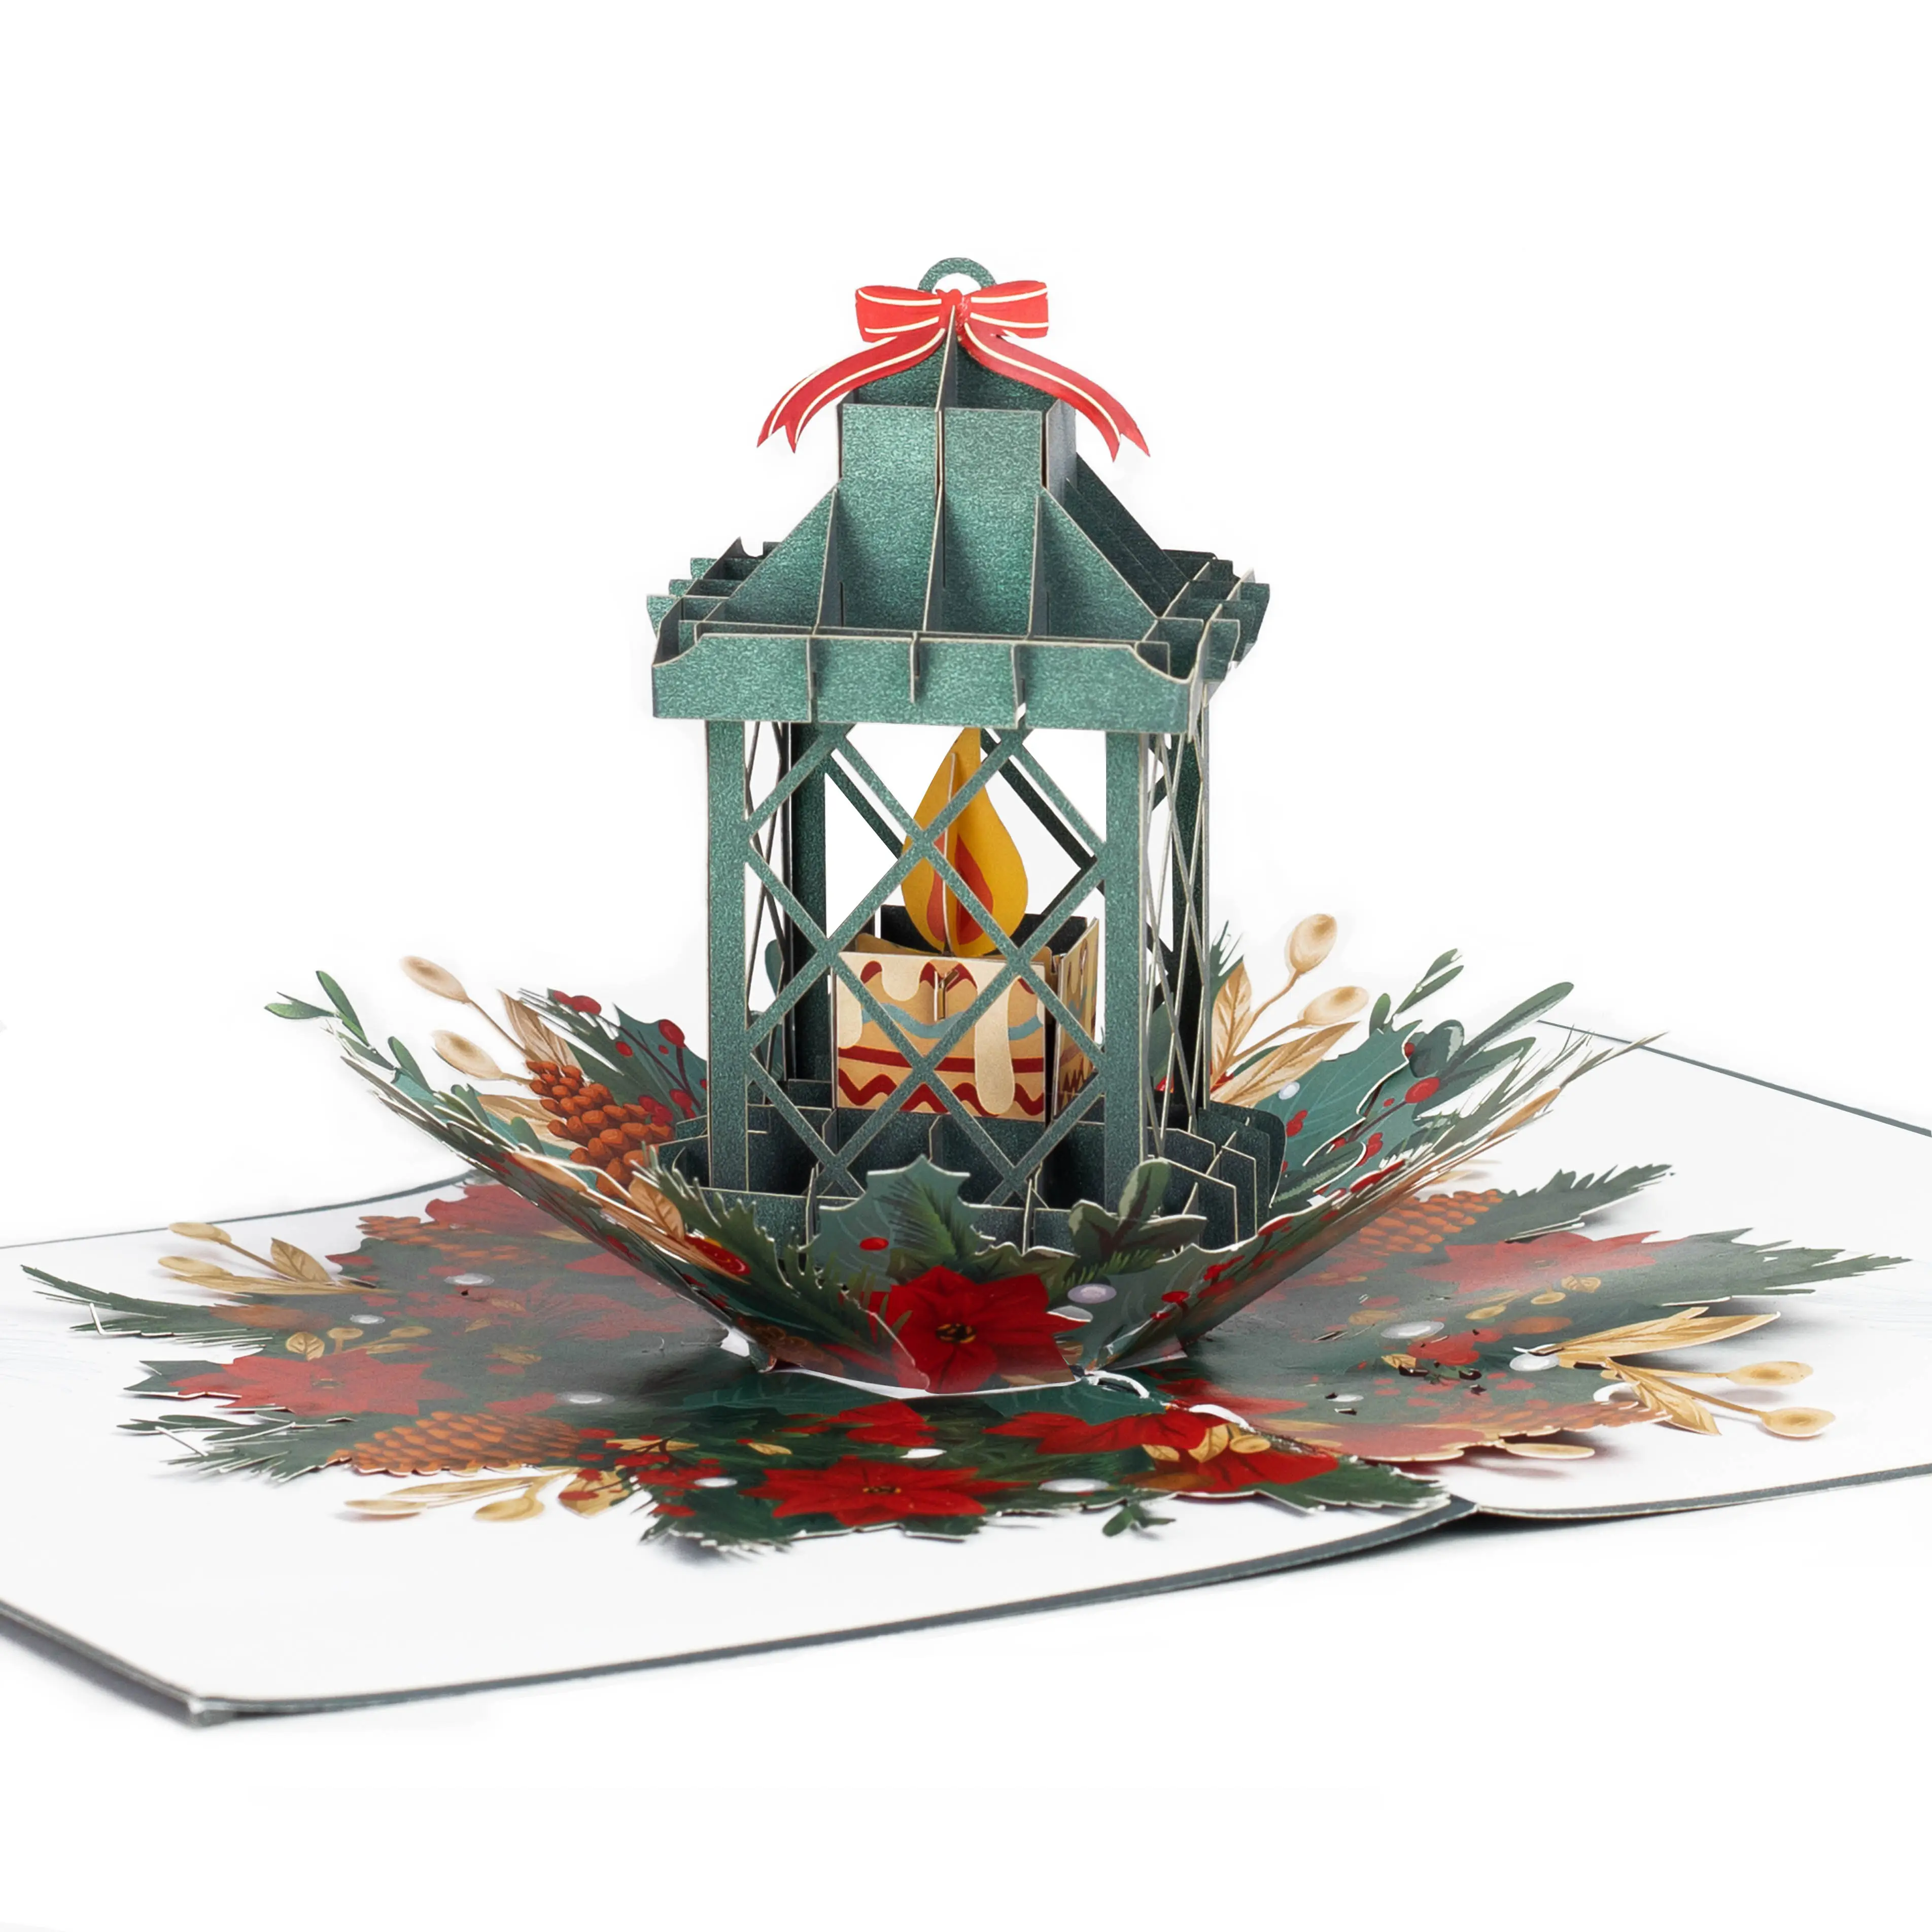 Kiricard 3D Pop Up Card Gruß Handgemachte Karte Weihnachts kerzen karte Neues Design für Weihnachts handwerk